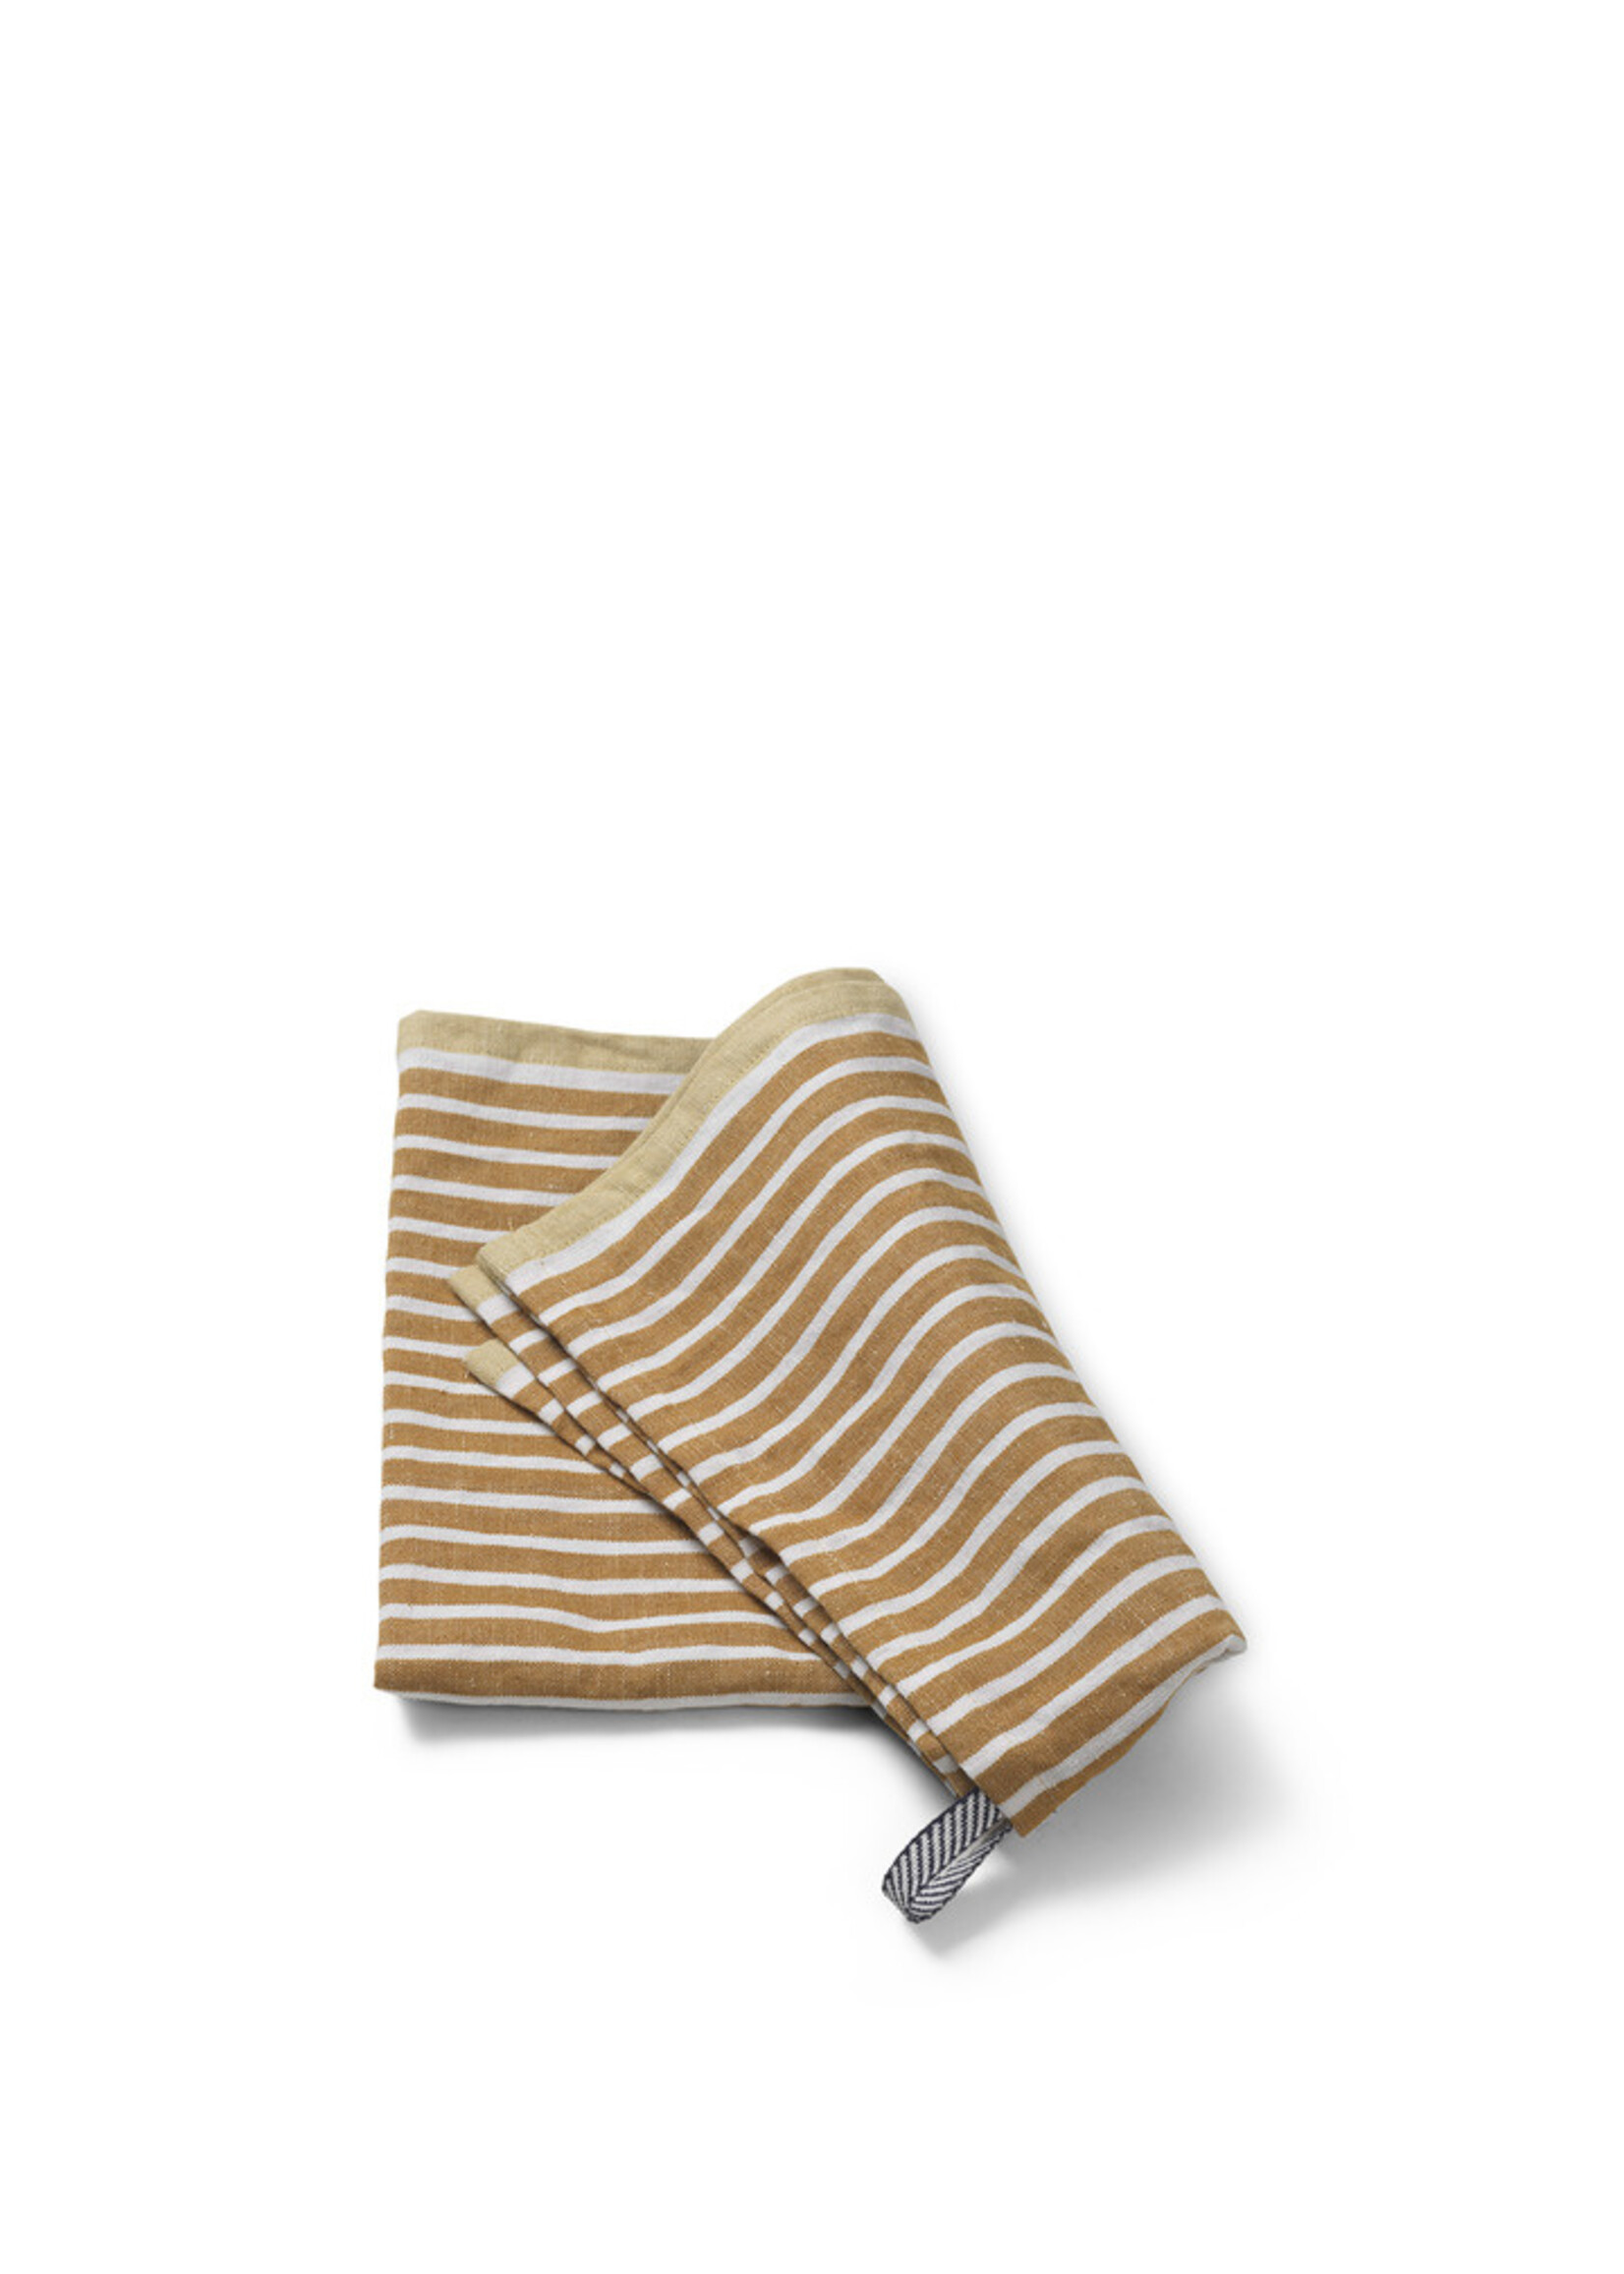 Ferm Ferm - hale towel Golden Brown/Silver Fern